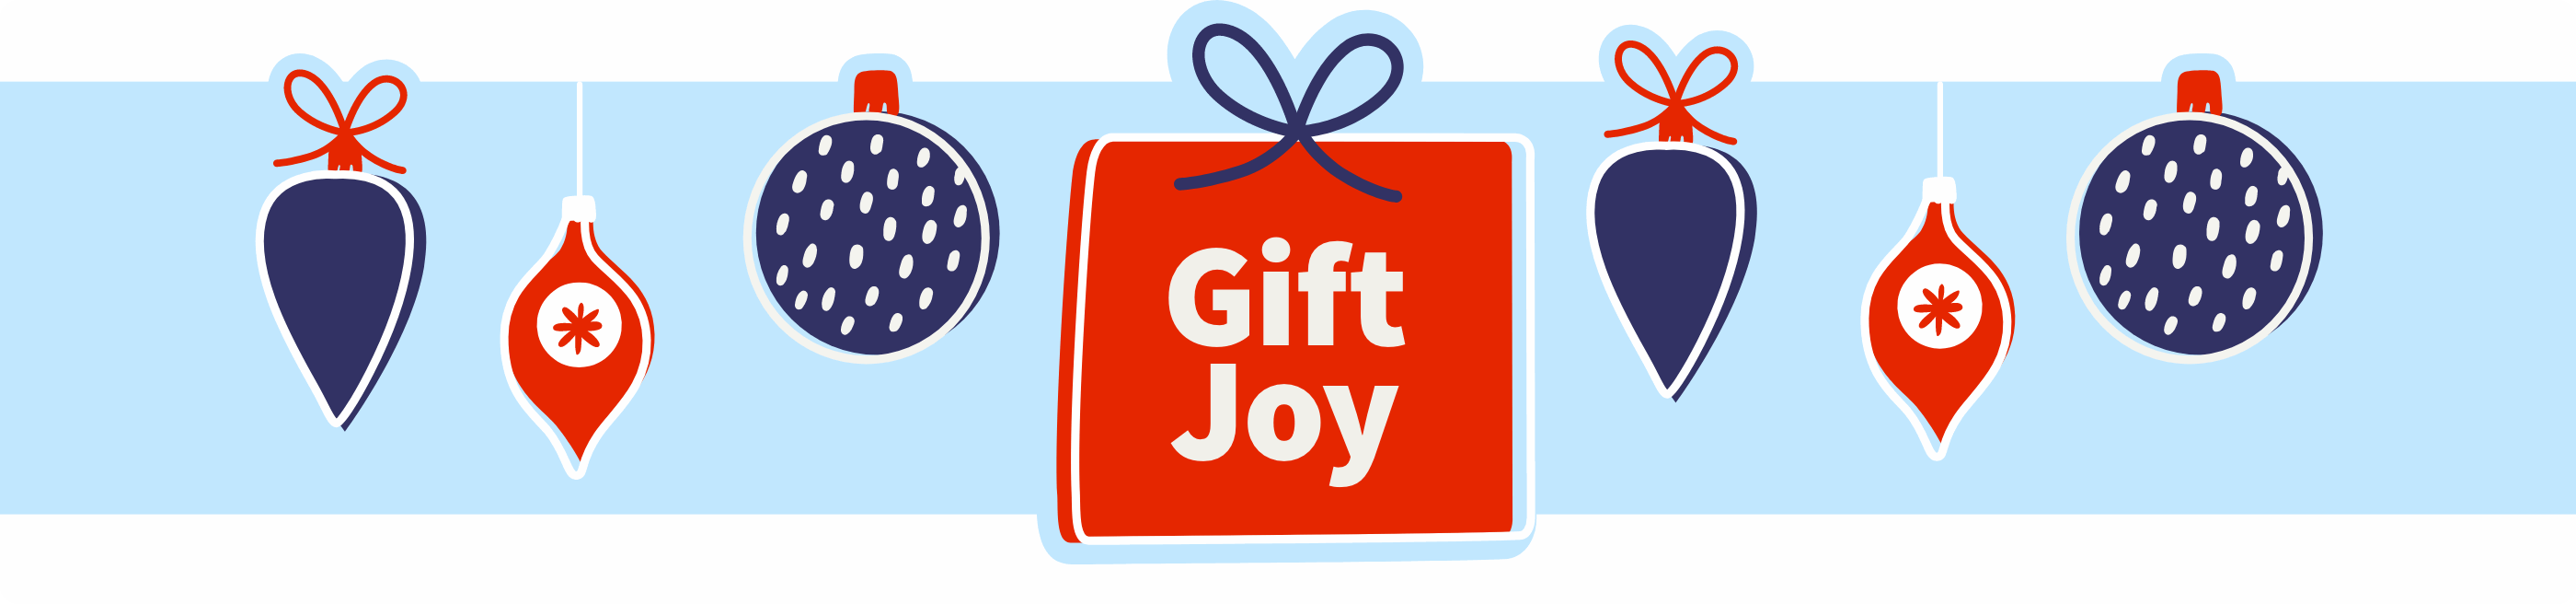 Gift joy